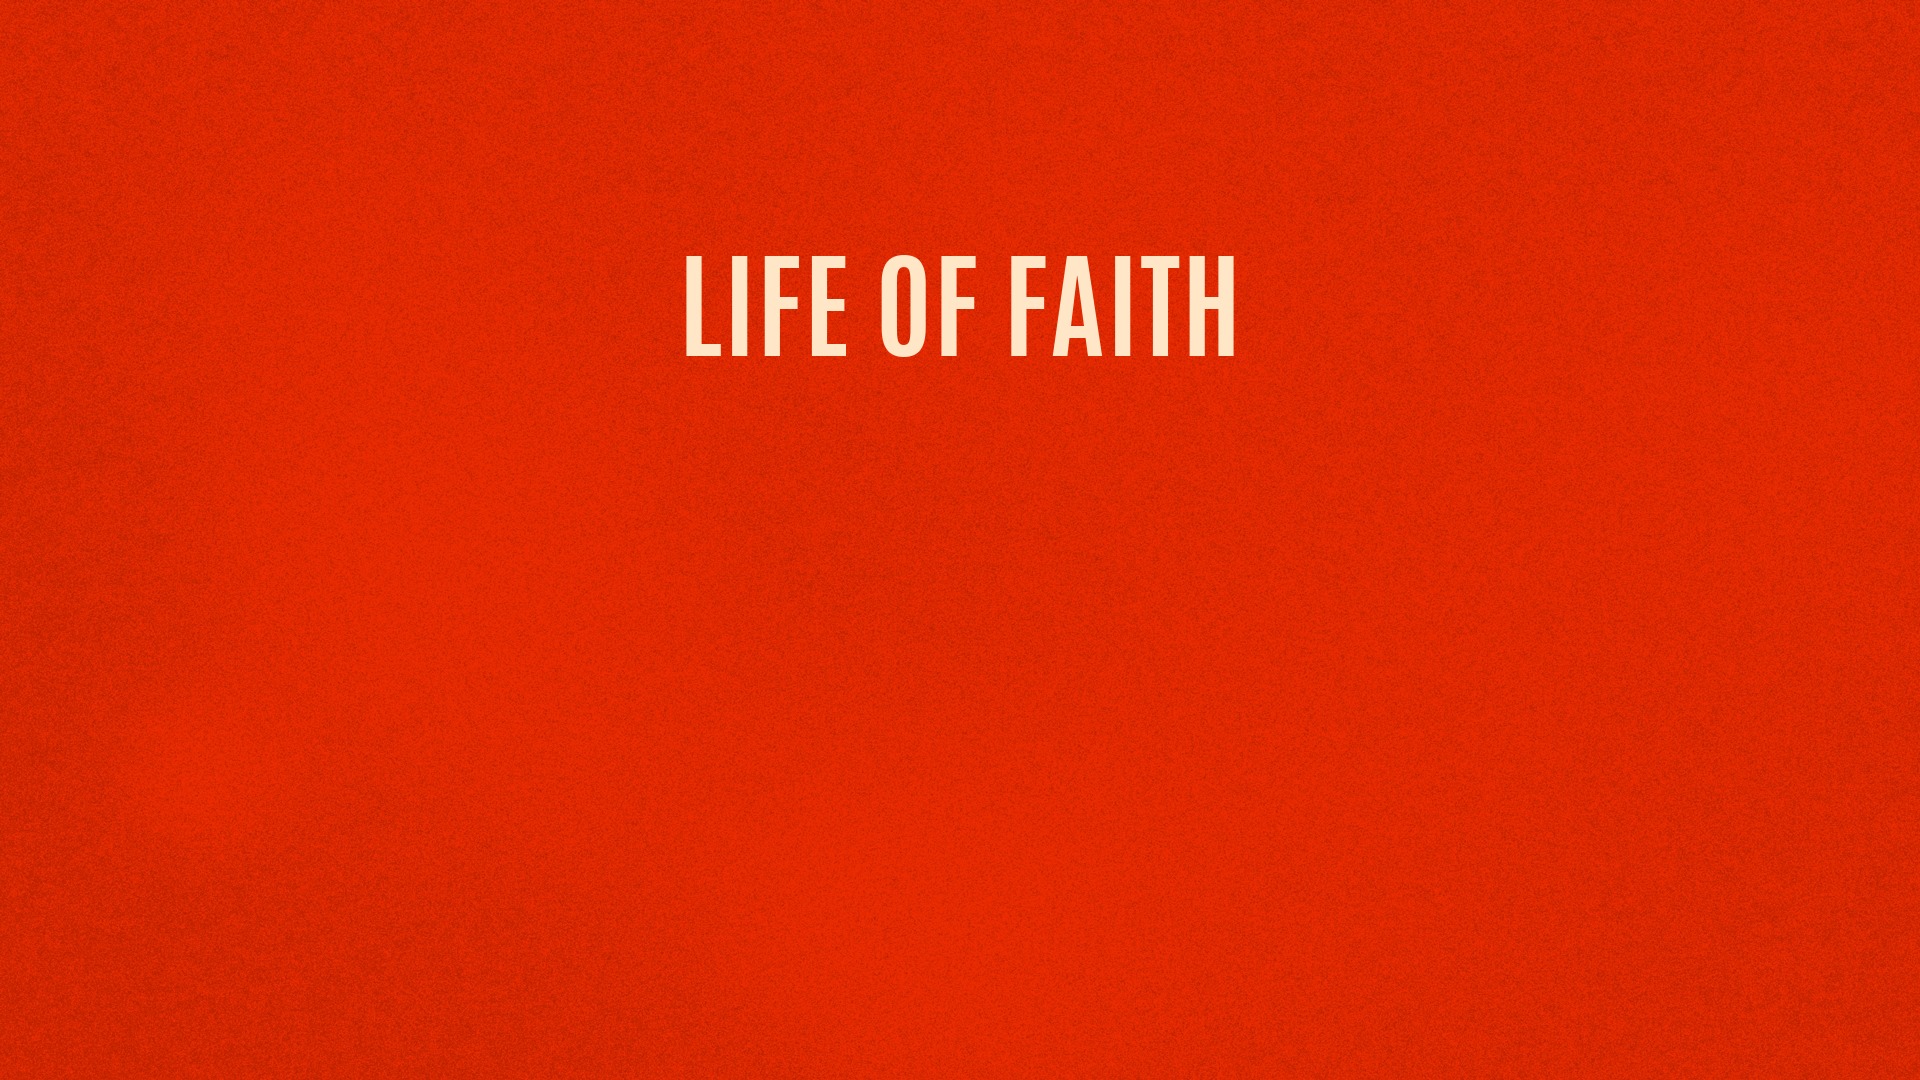 Life of faith